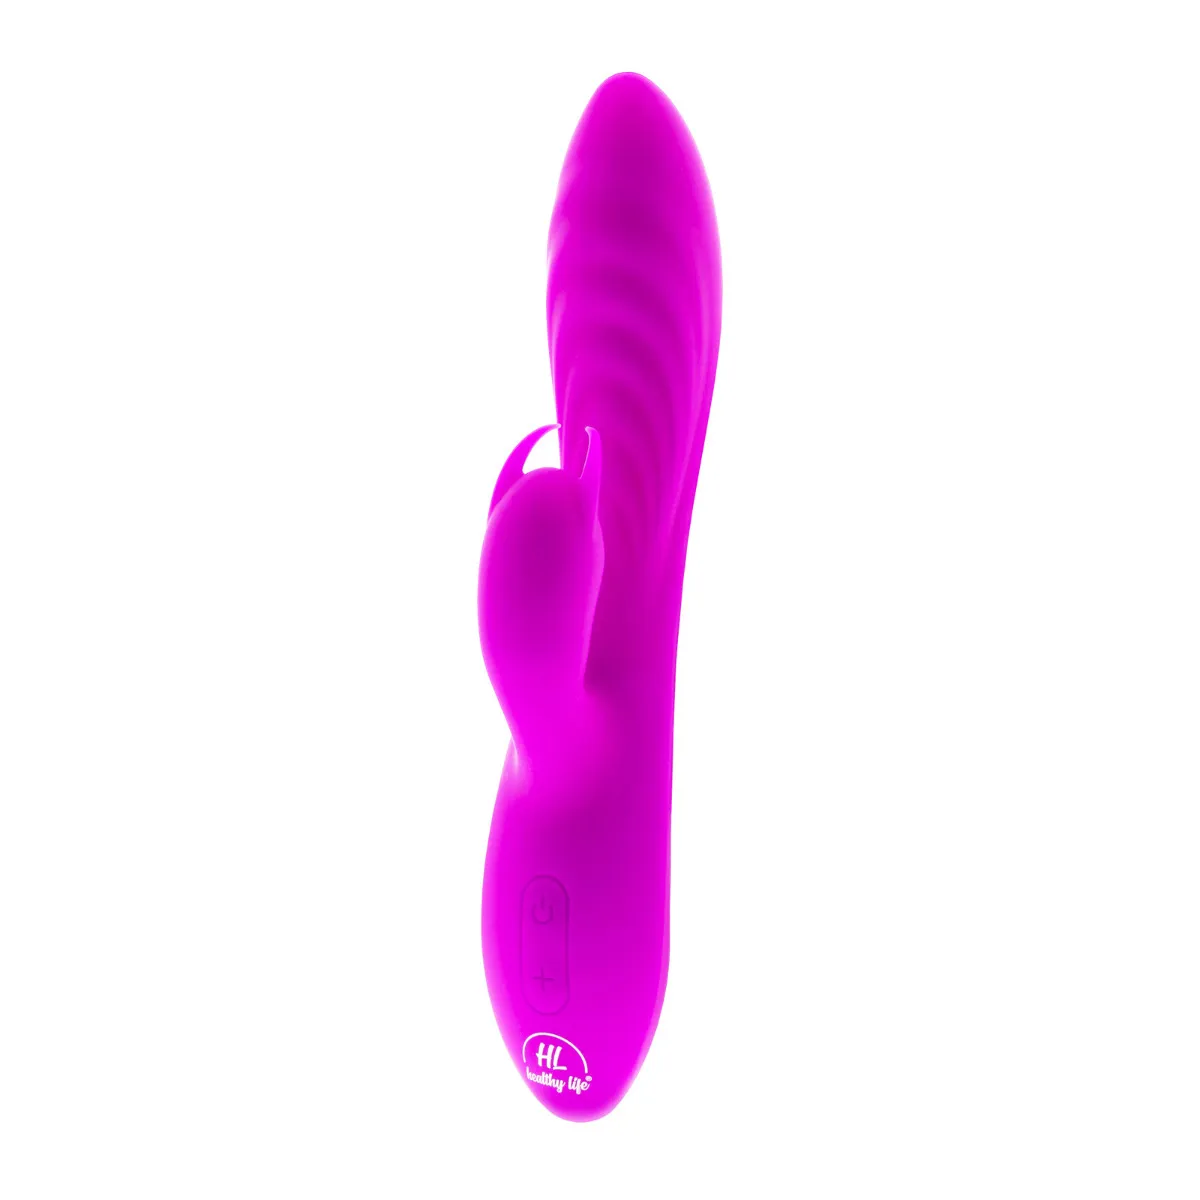 Healthy Life - Duálny vibrátor Diego fialový 1×1 kus, vibrátor duálny